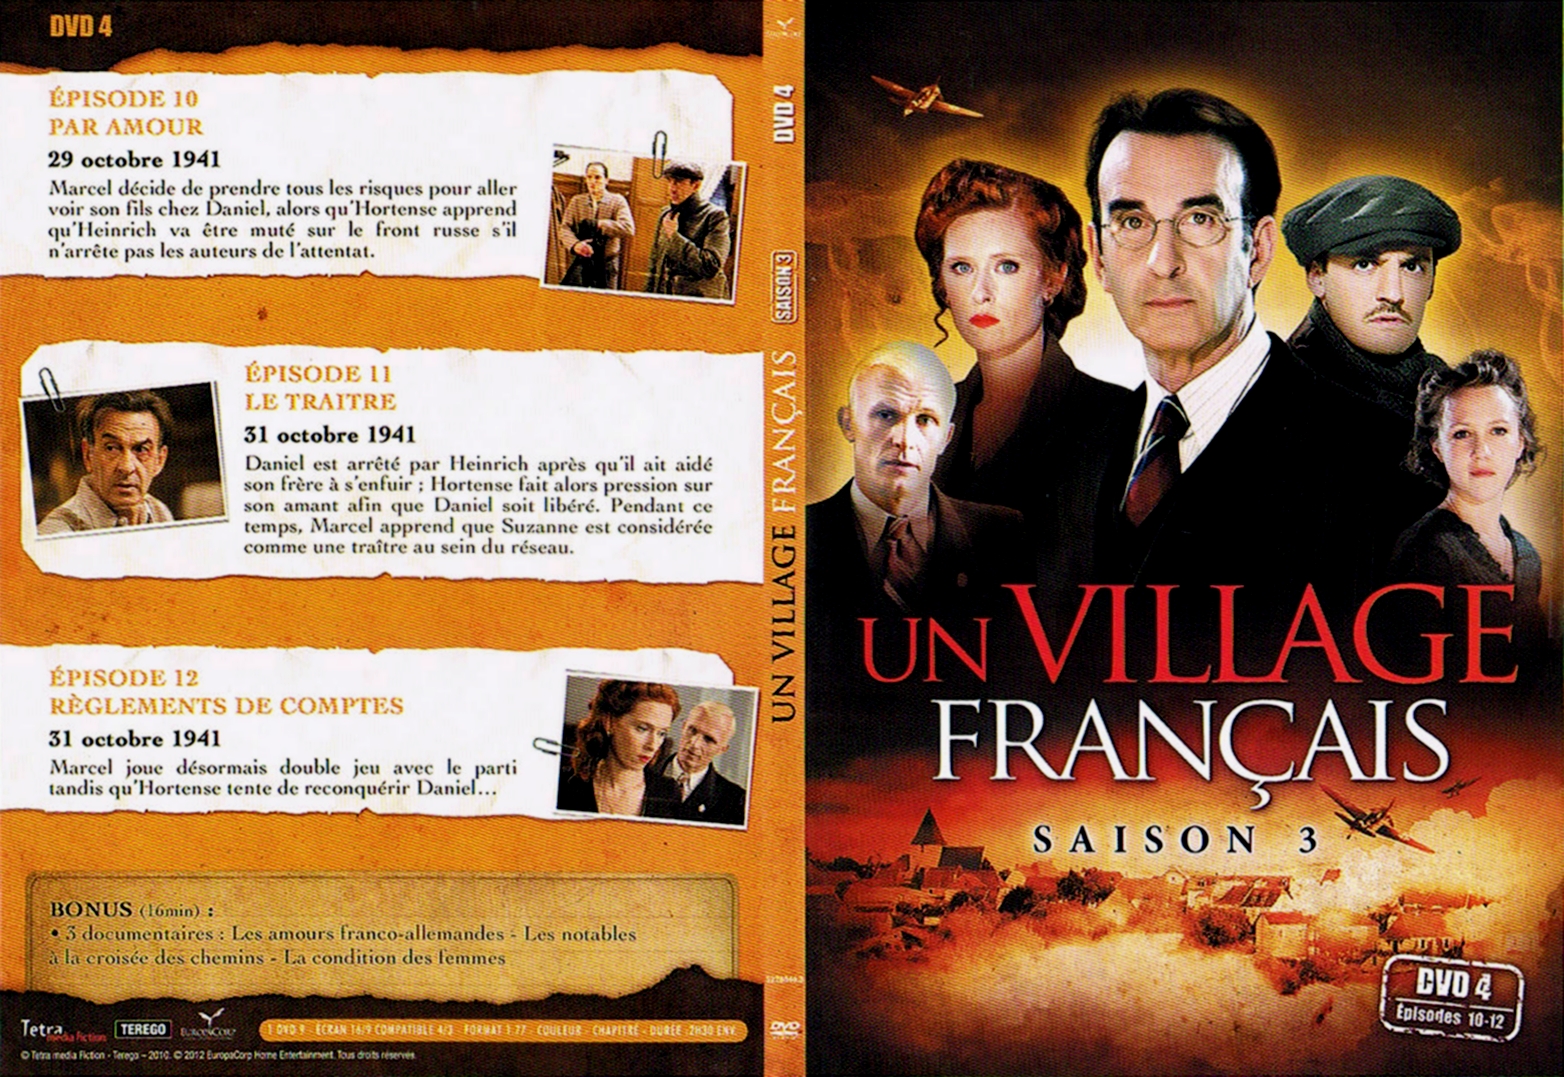 Jaquette DVD Un village francais Saison 3 DVD 3